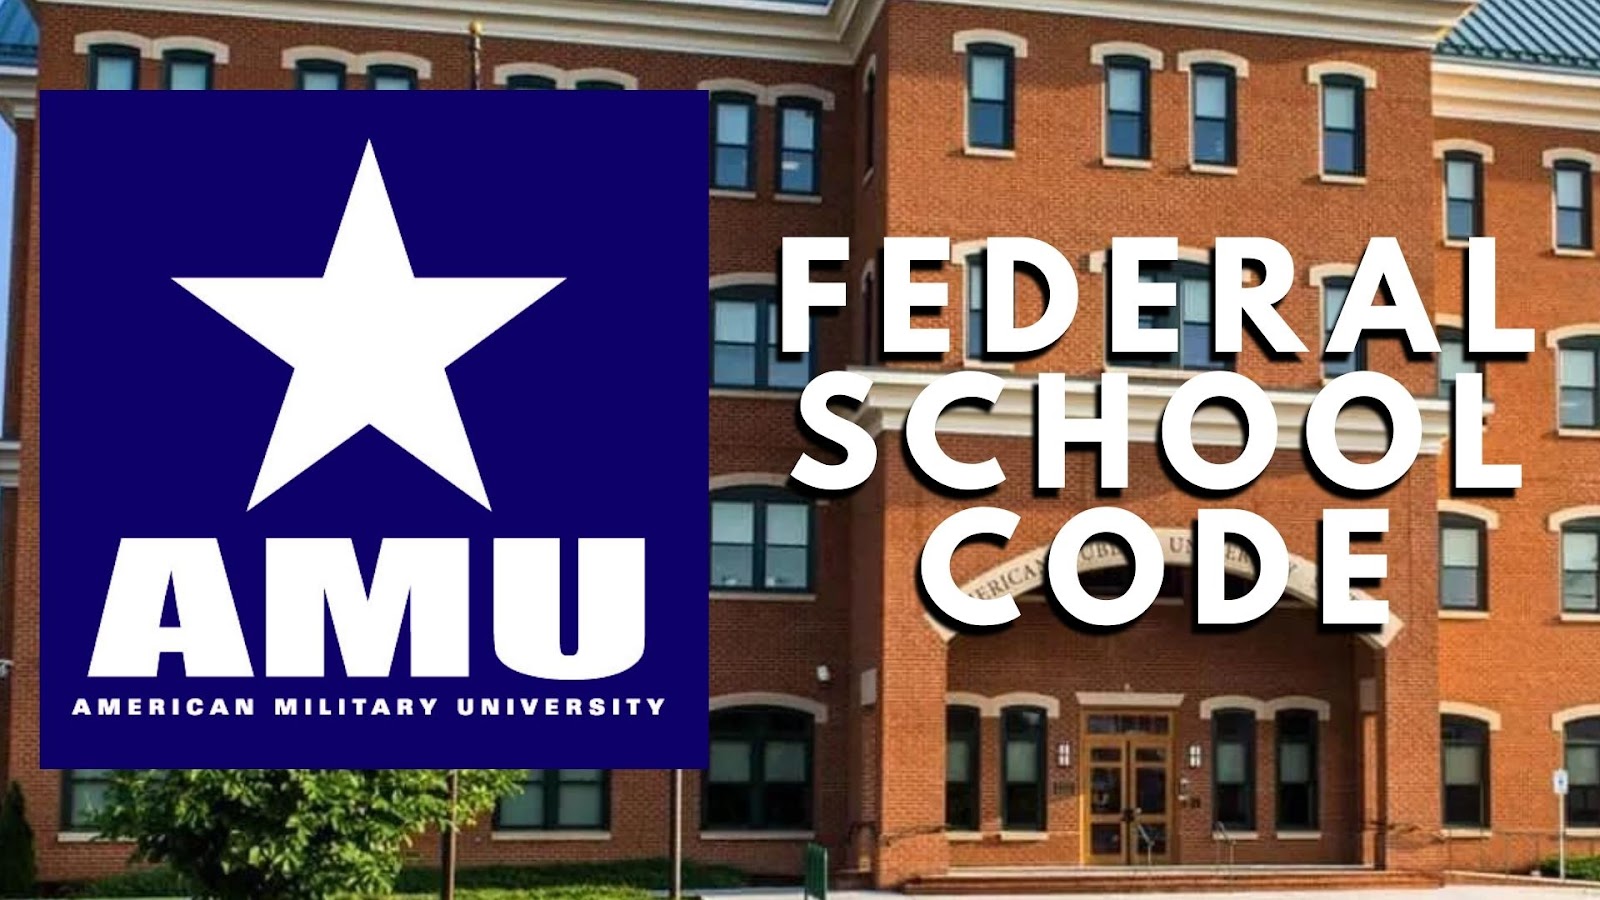 AMU Federal School Code